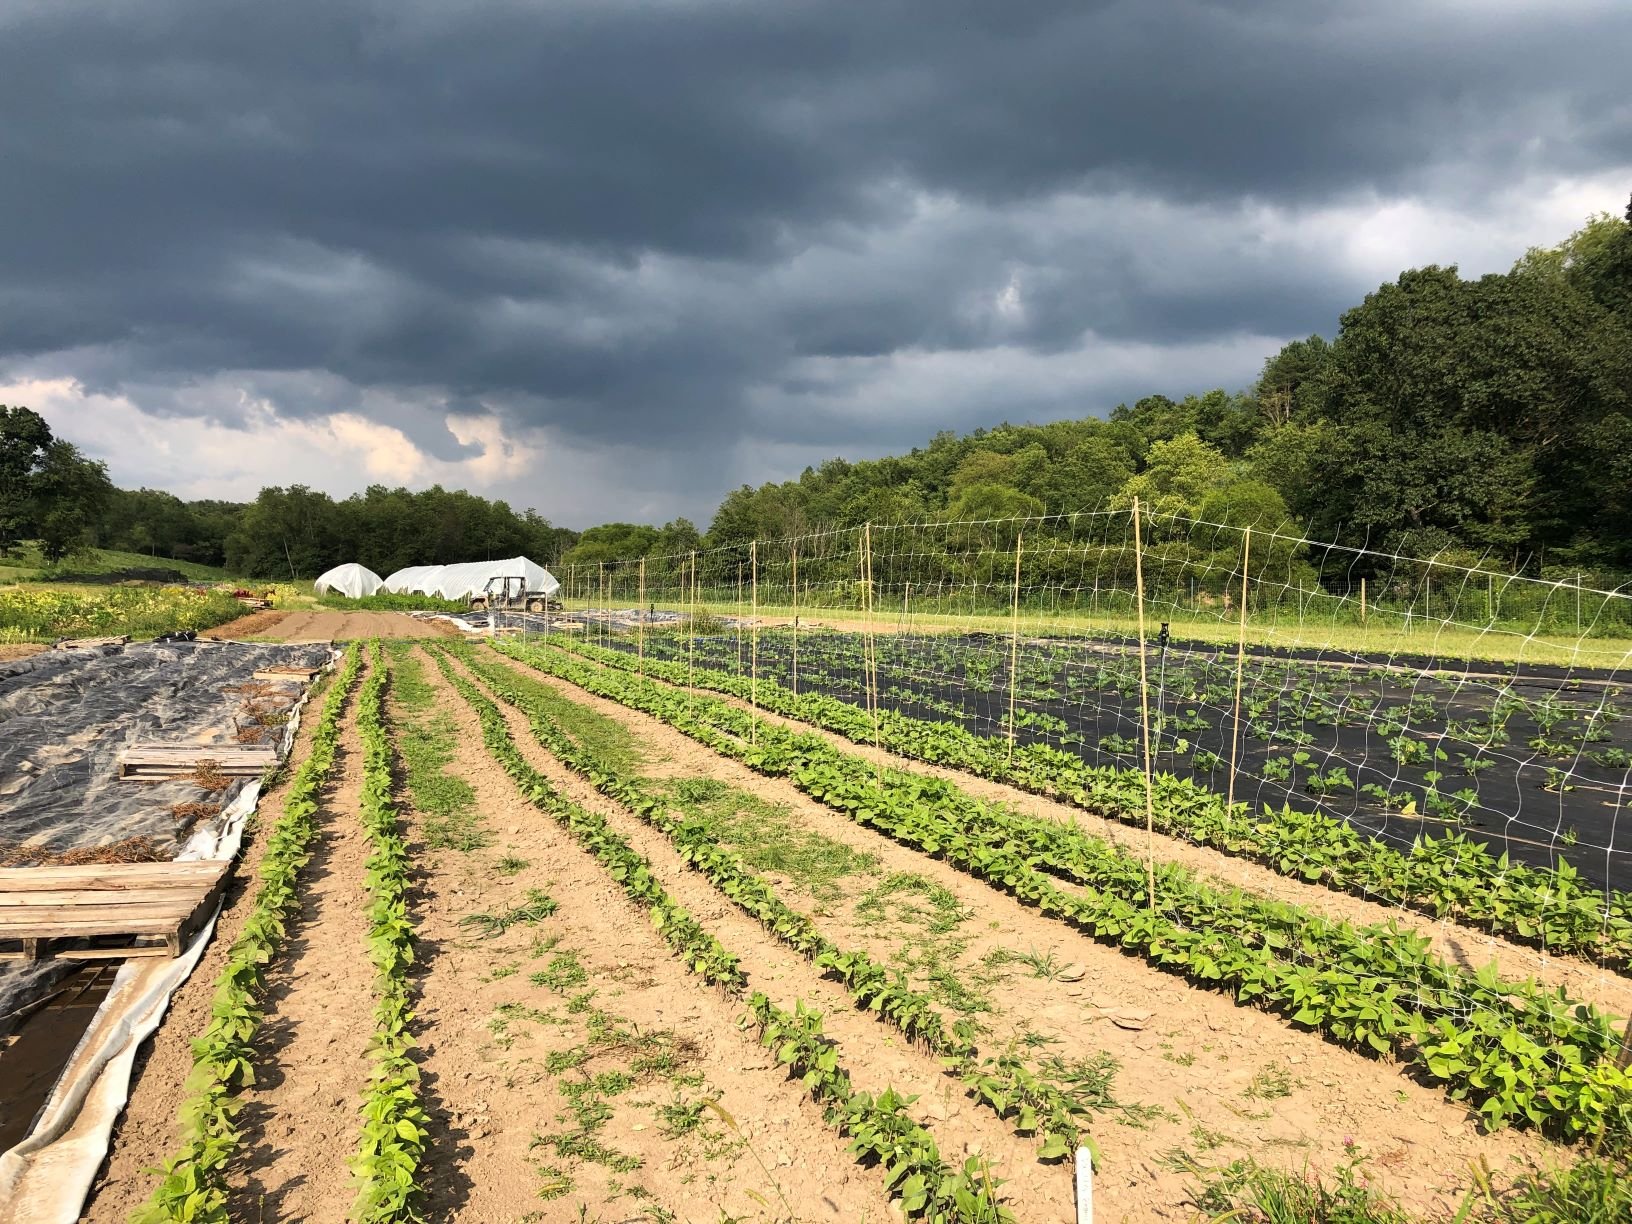 Next Happening: Farm Happenings for August 27, 2019 (week 12)